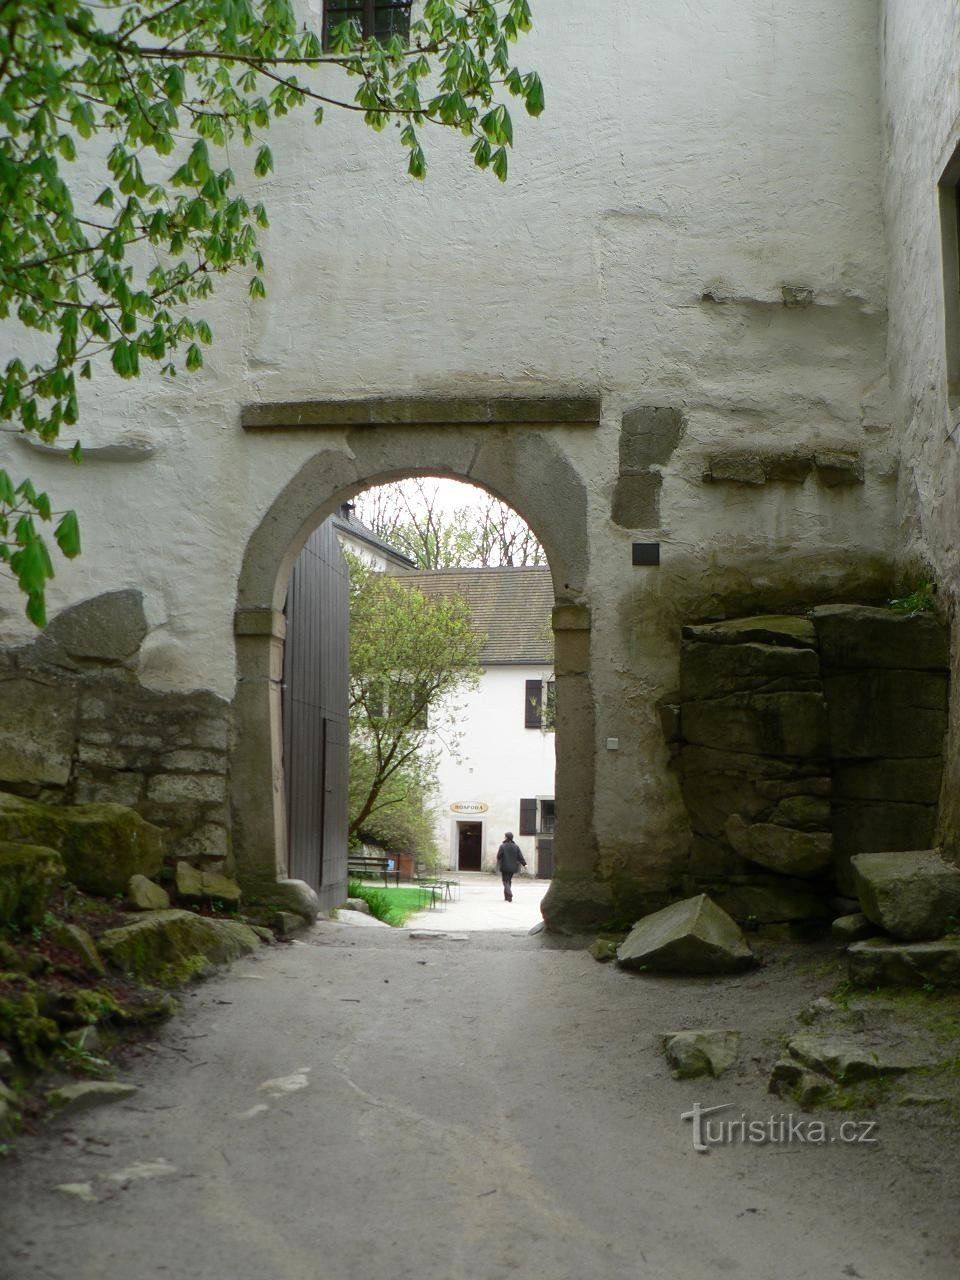 Roštejn, poarta de intrare a castelului